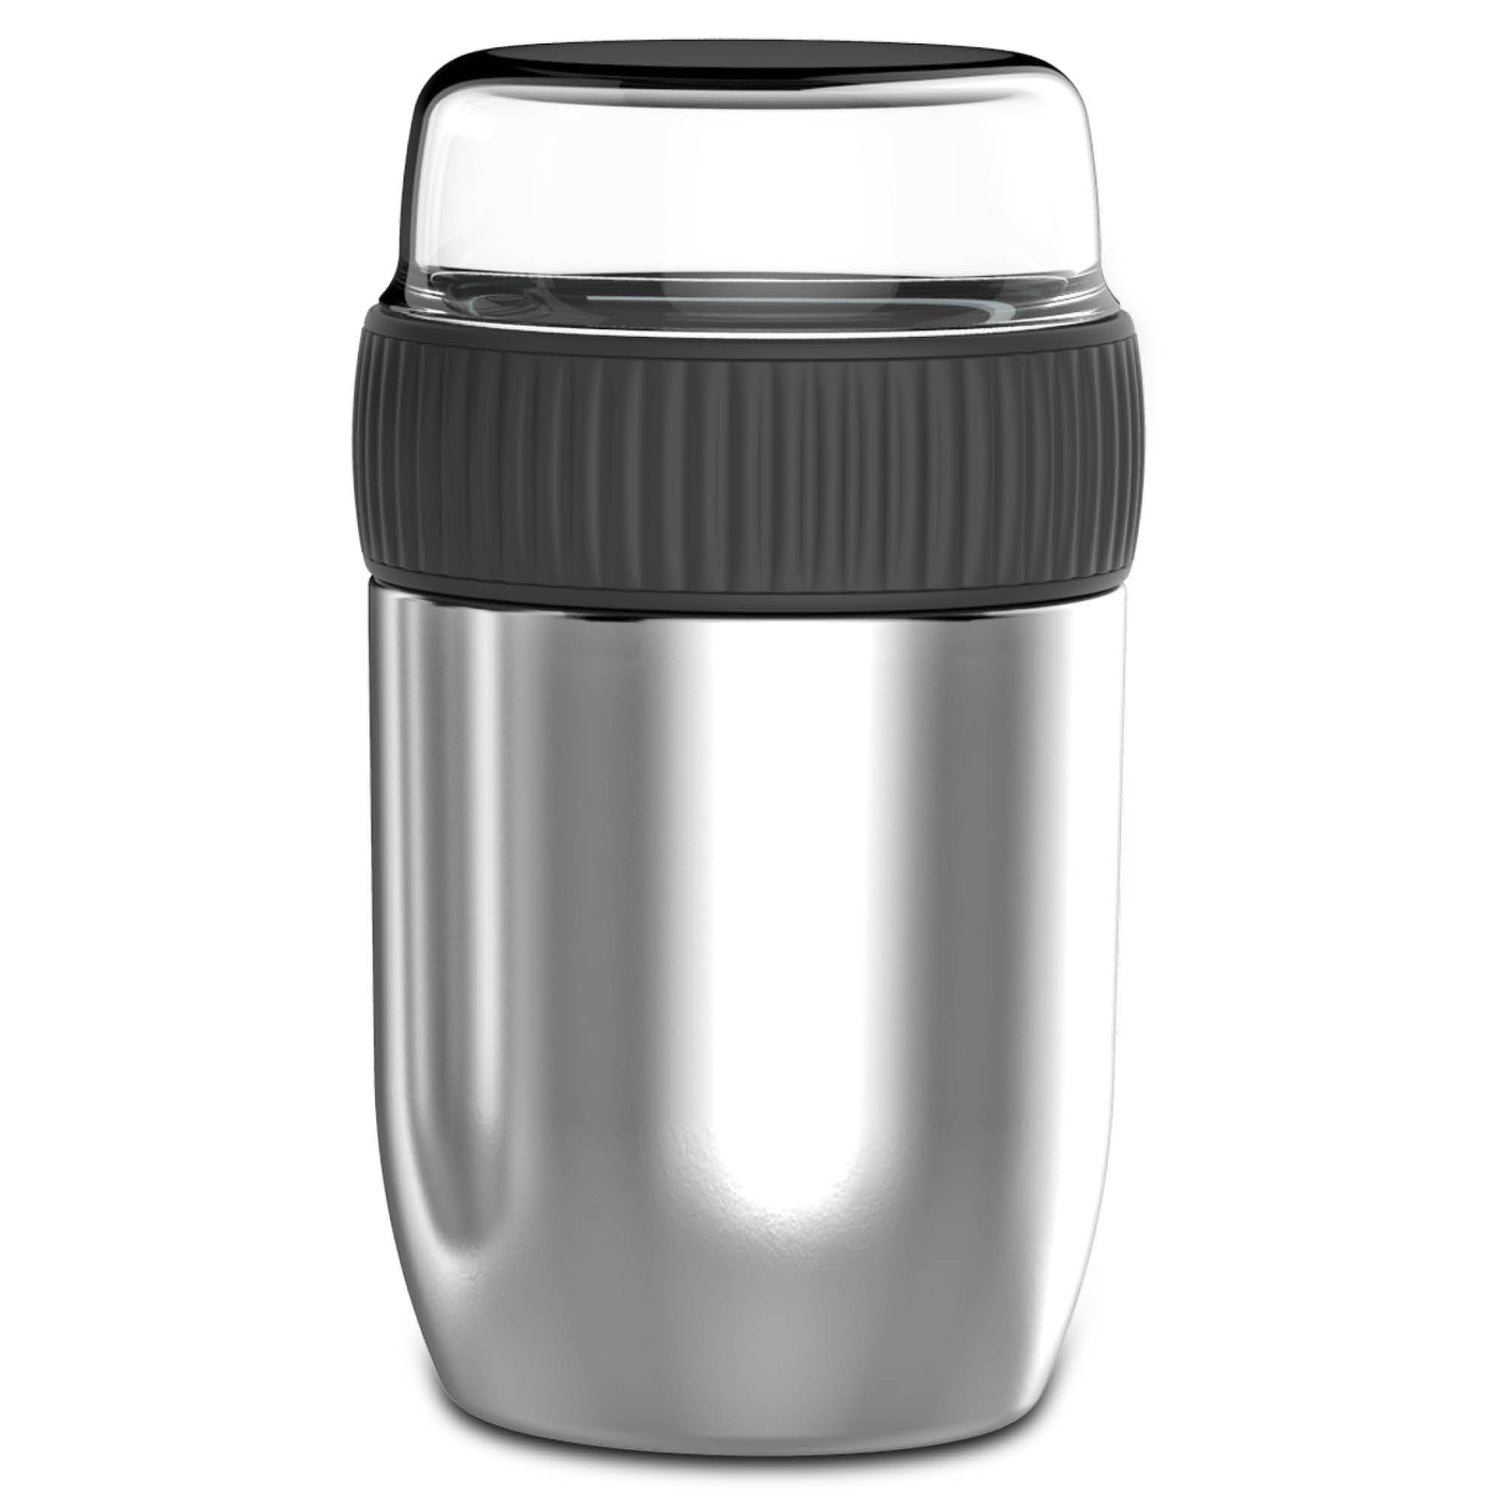 Coninx Thermos Lunchbox - Tasse à muesli à emporter - Tasse à